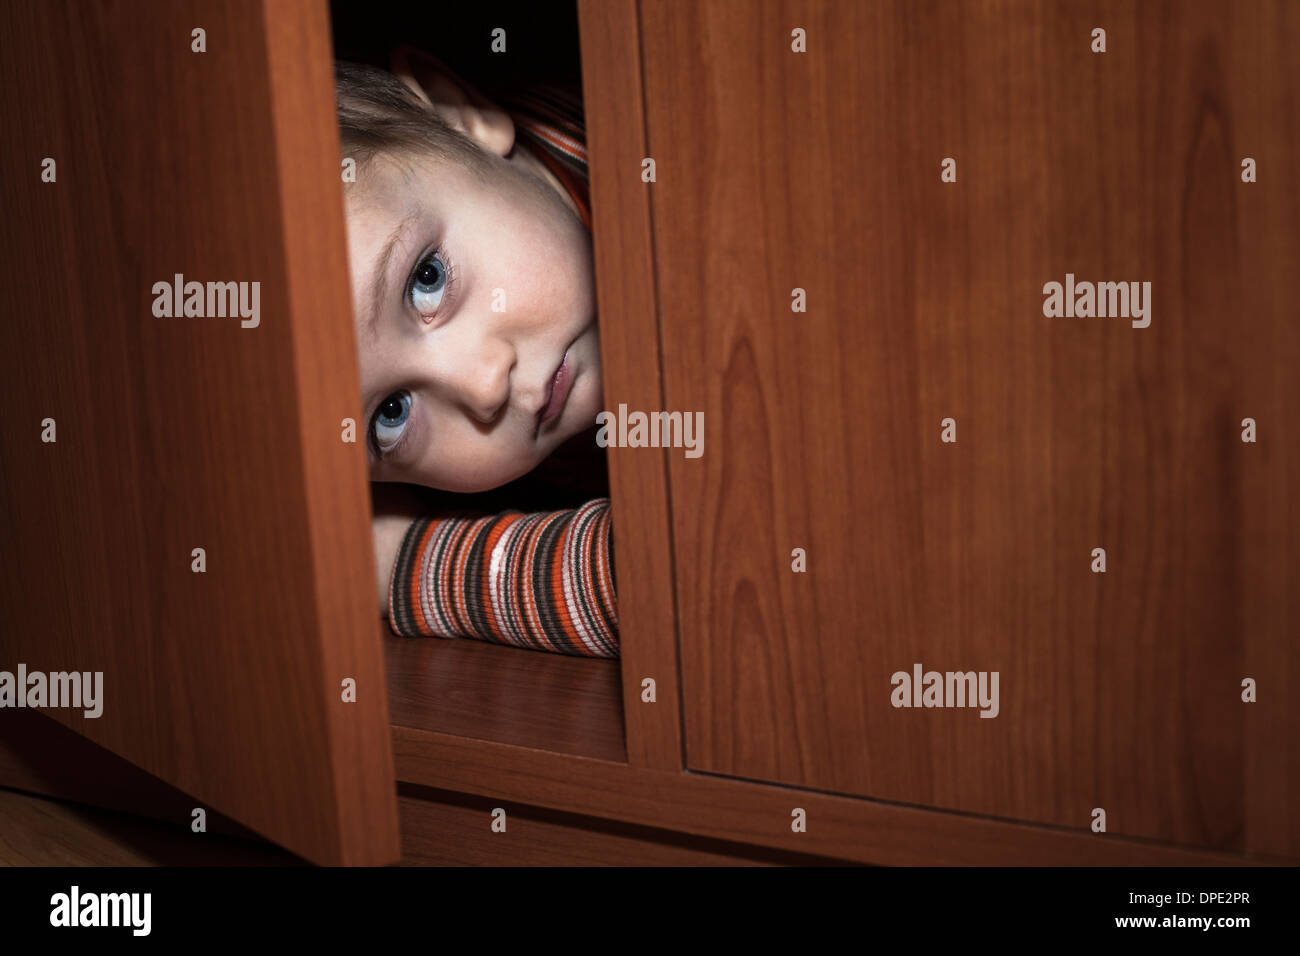 Angst Kind junge versteckt sich im Kleiderschrank Stockfoto